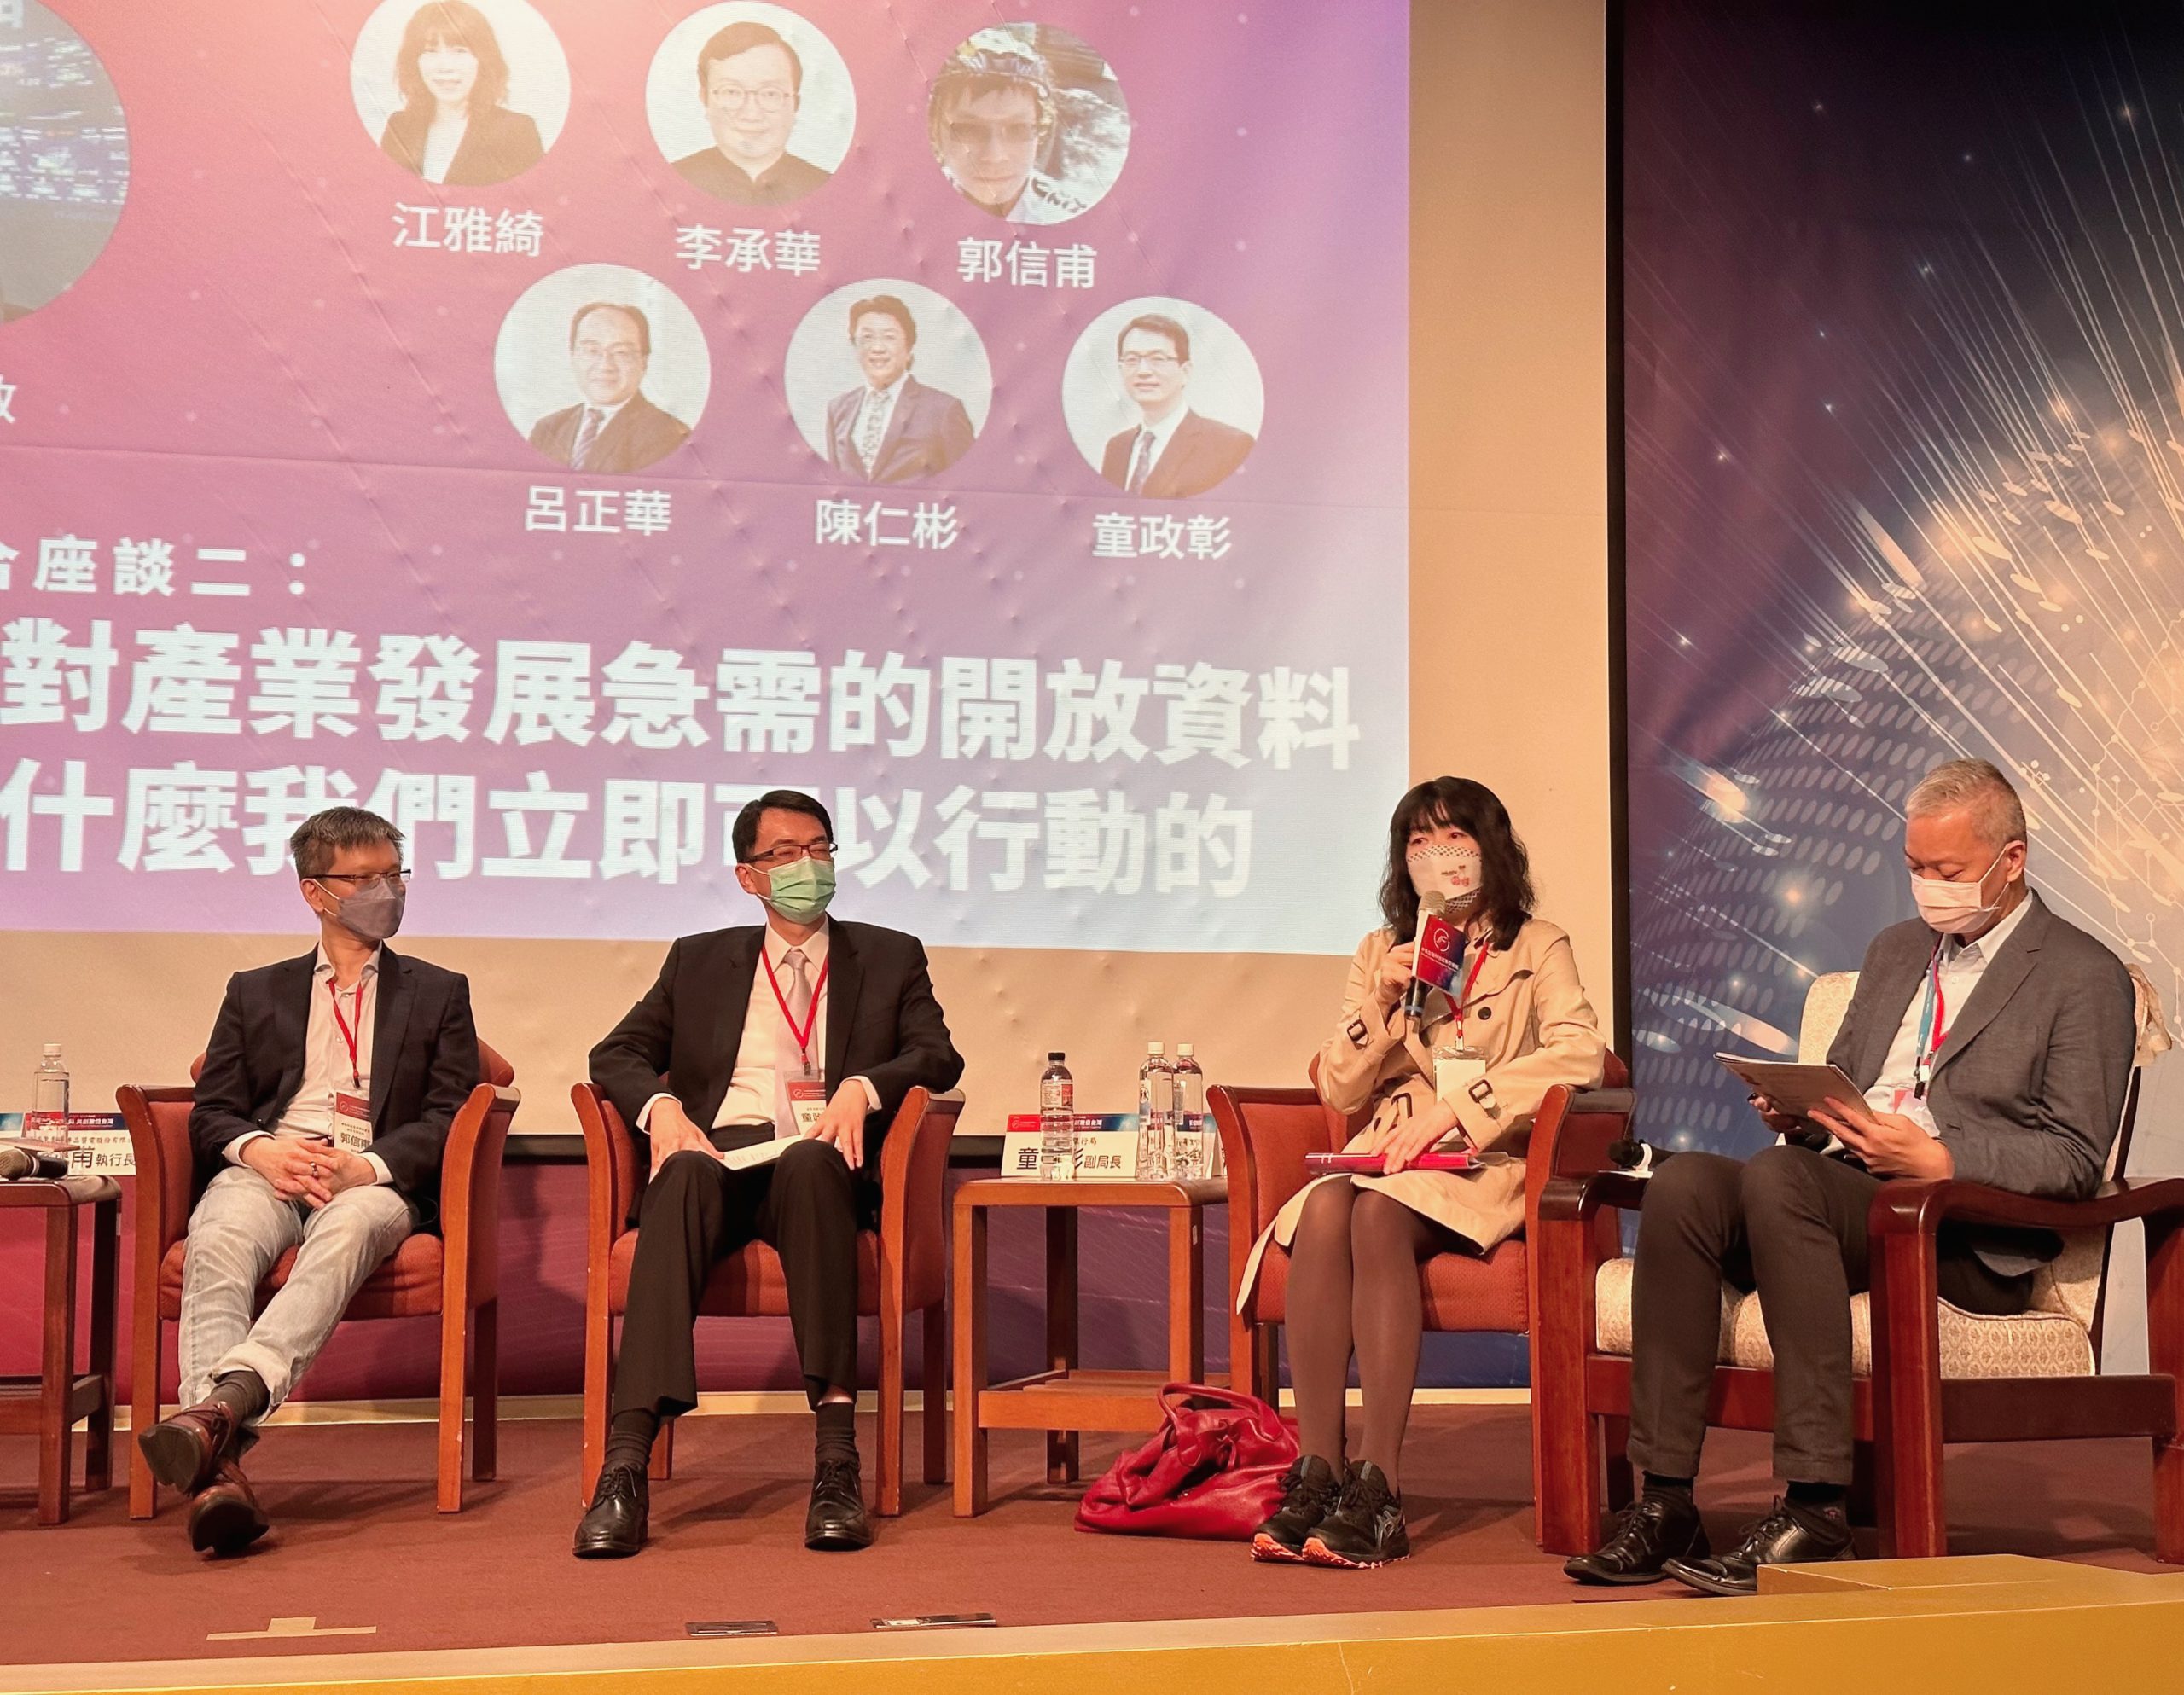 2022/11/30-「開放資料 共創數位台灣」年度論壇與談